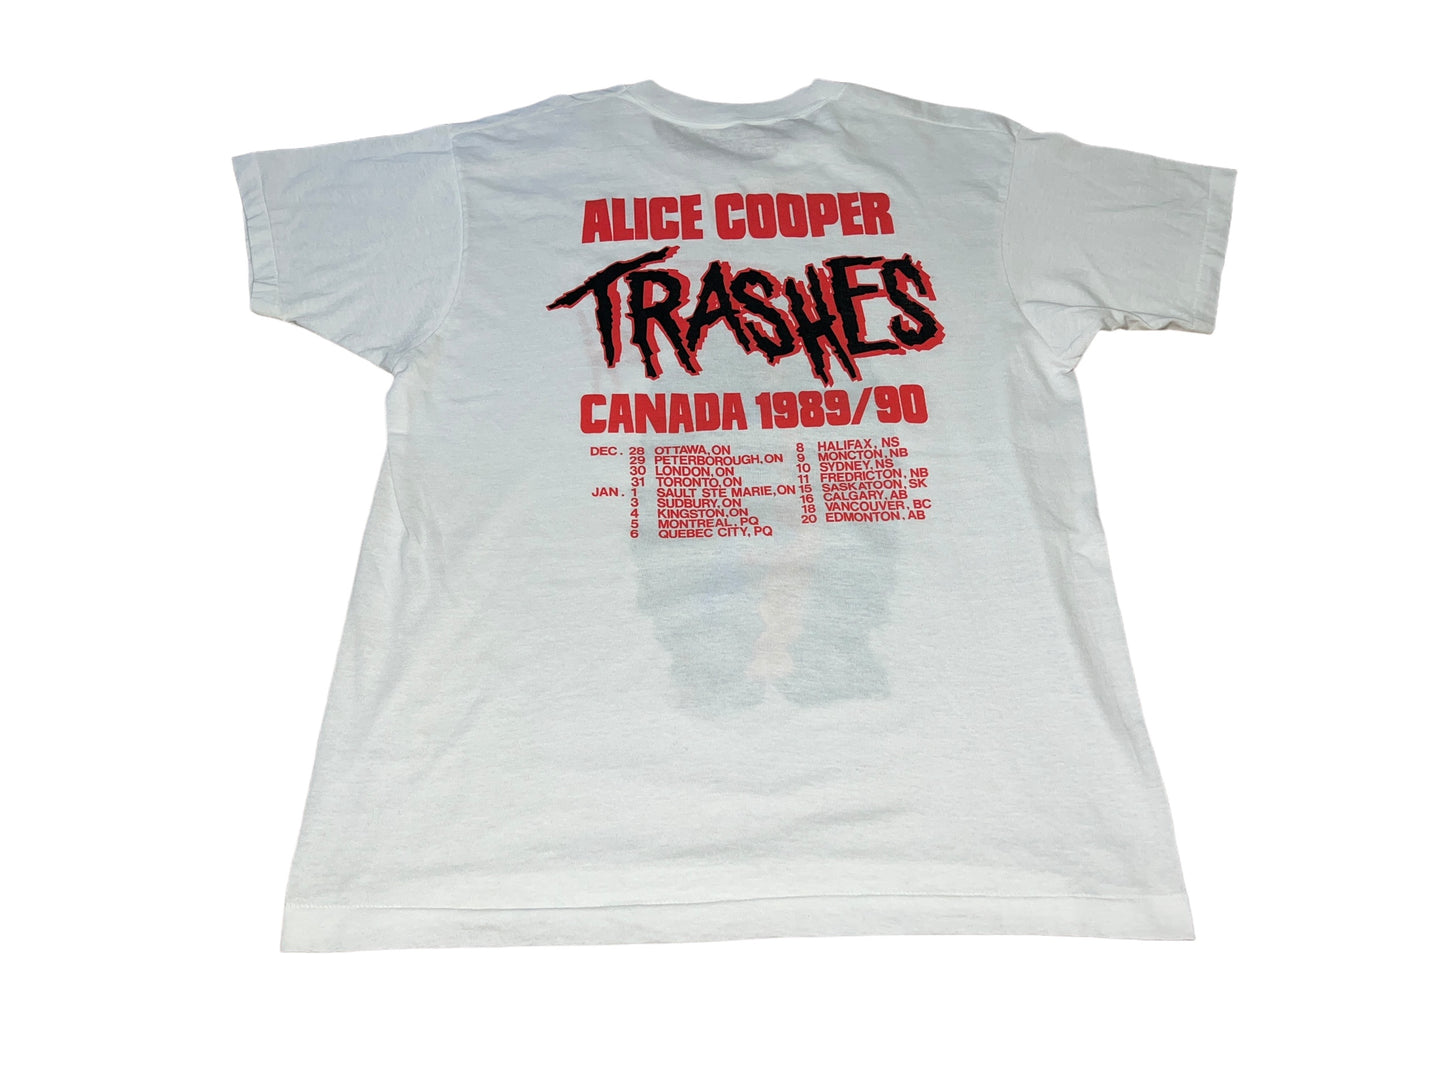 Vintage 1989 Alice Cooper T-Shirt